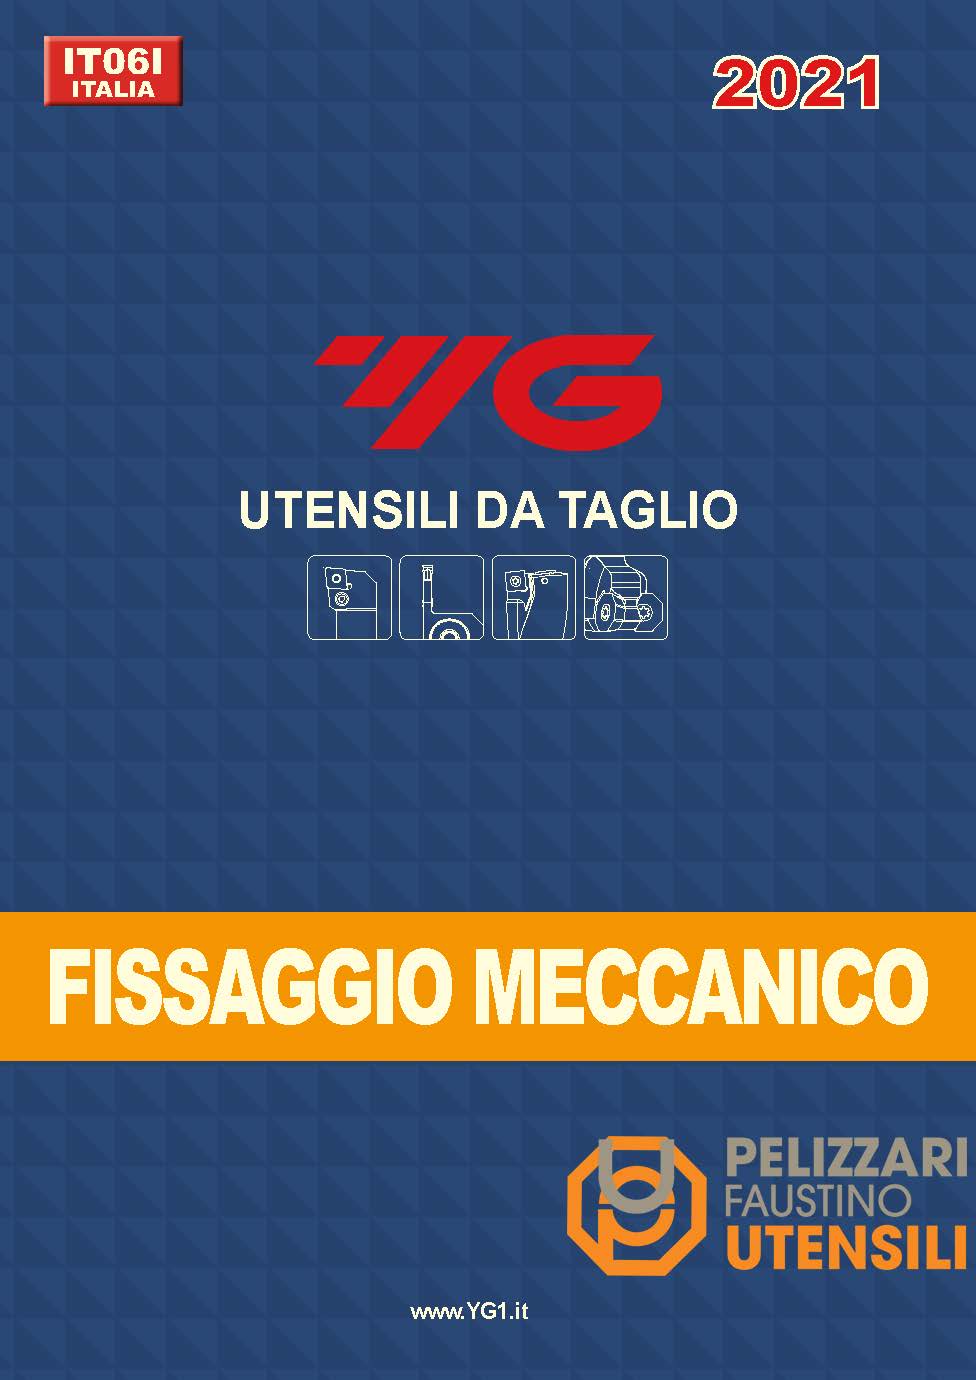 yg1-fissaggio-meccanico-pelizzari-faustino_pagina_001